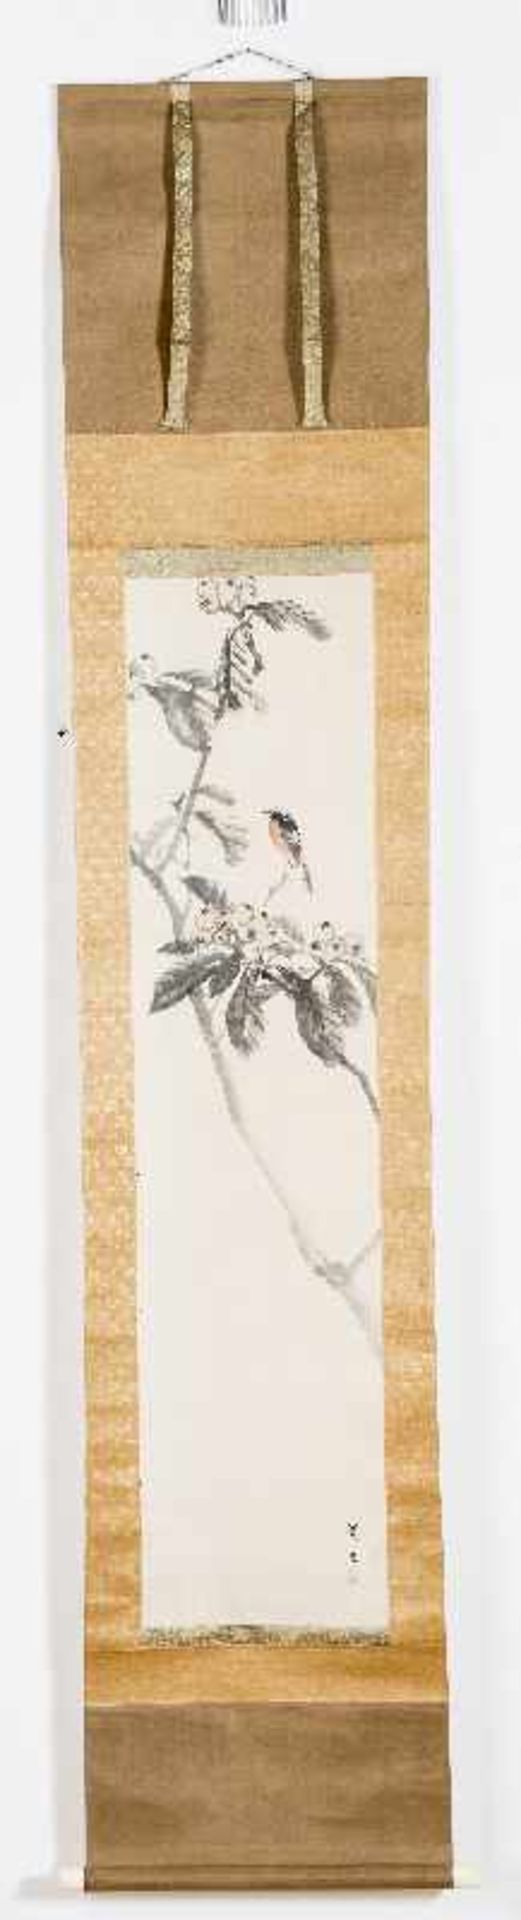 MATSUMURA KEIBUN (1779-1843): VOGEL IM LOQUATBAUM Tusche und etwas Farbe auf Papier. Japan, 1. H.